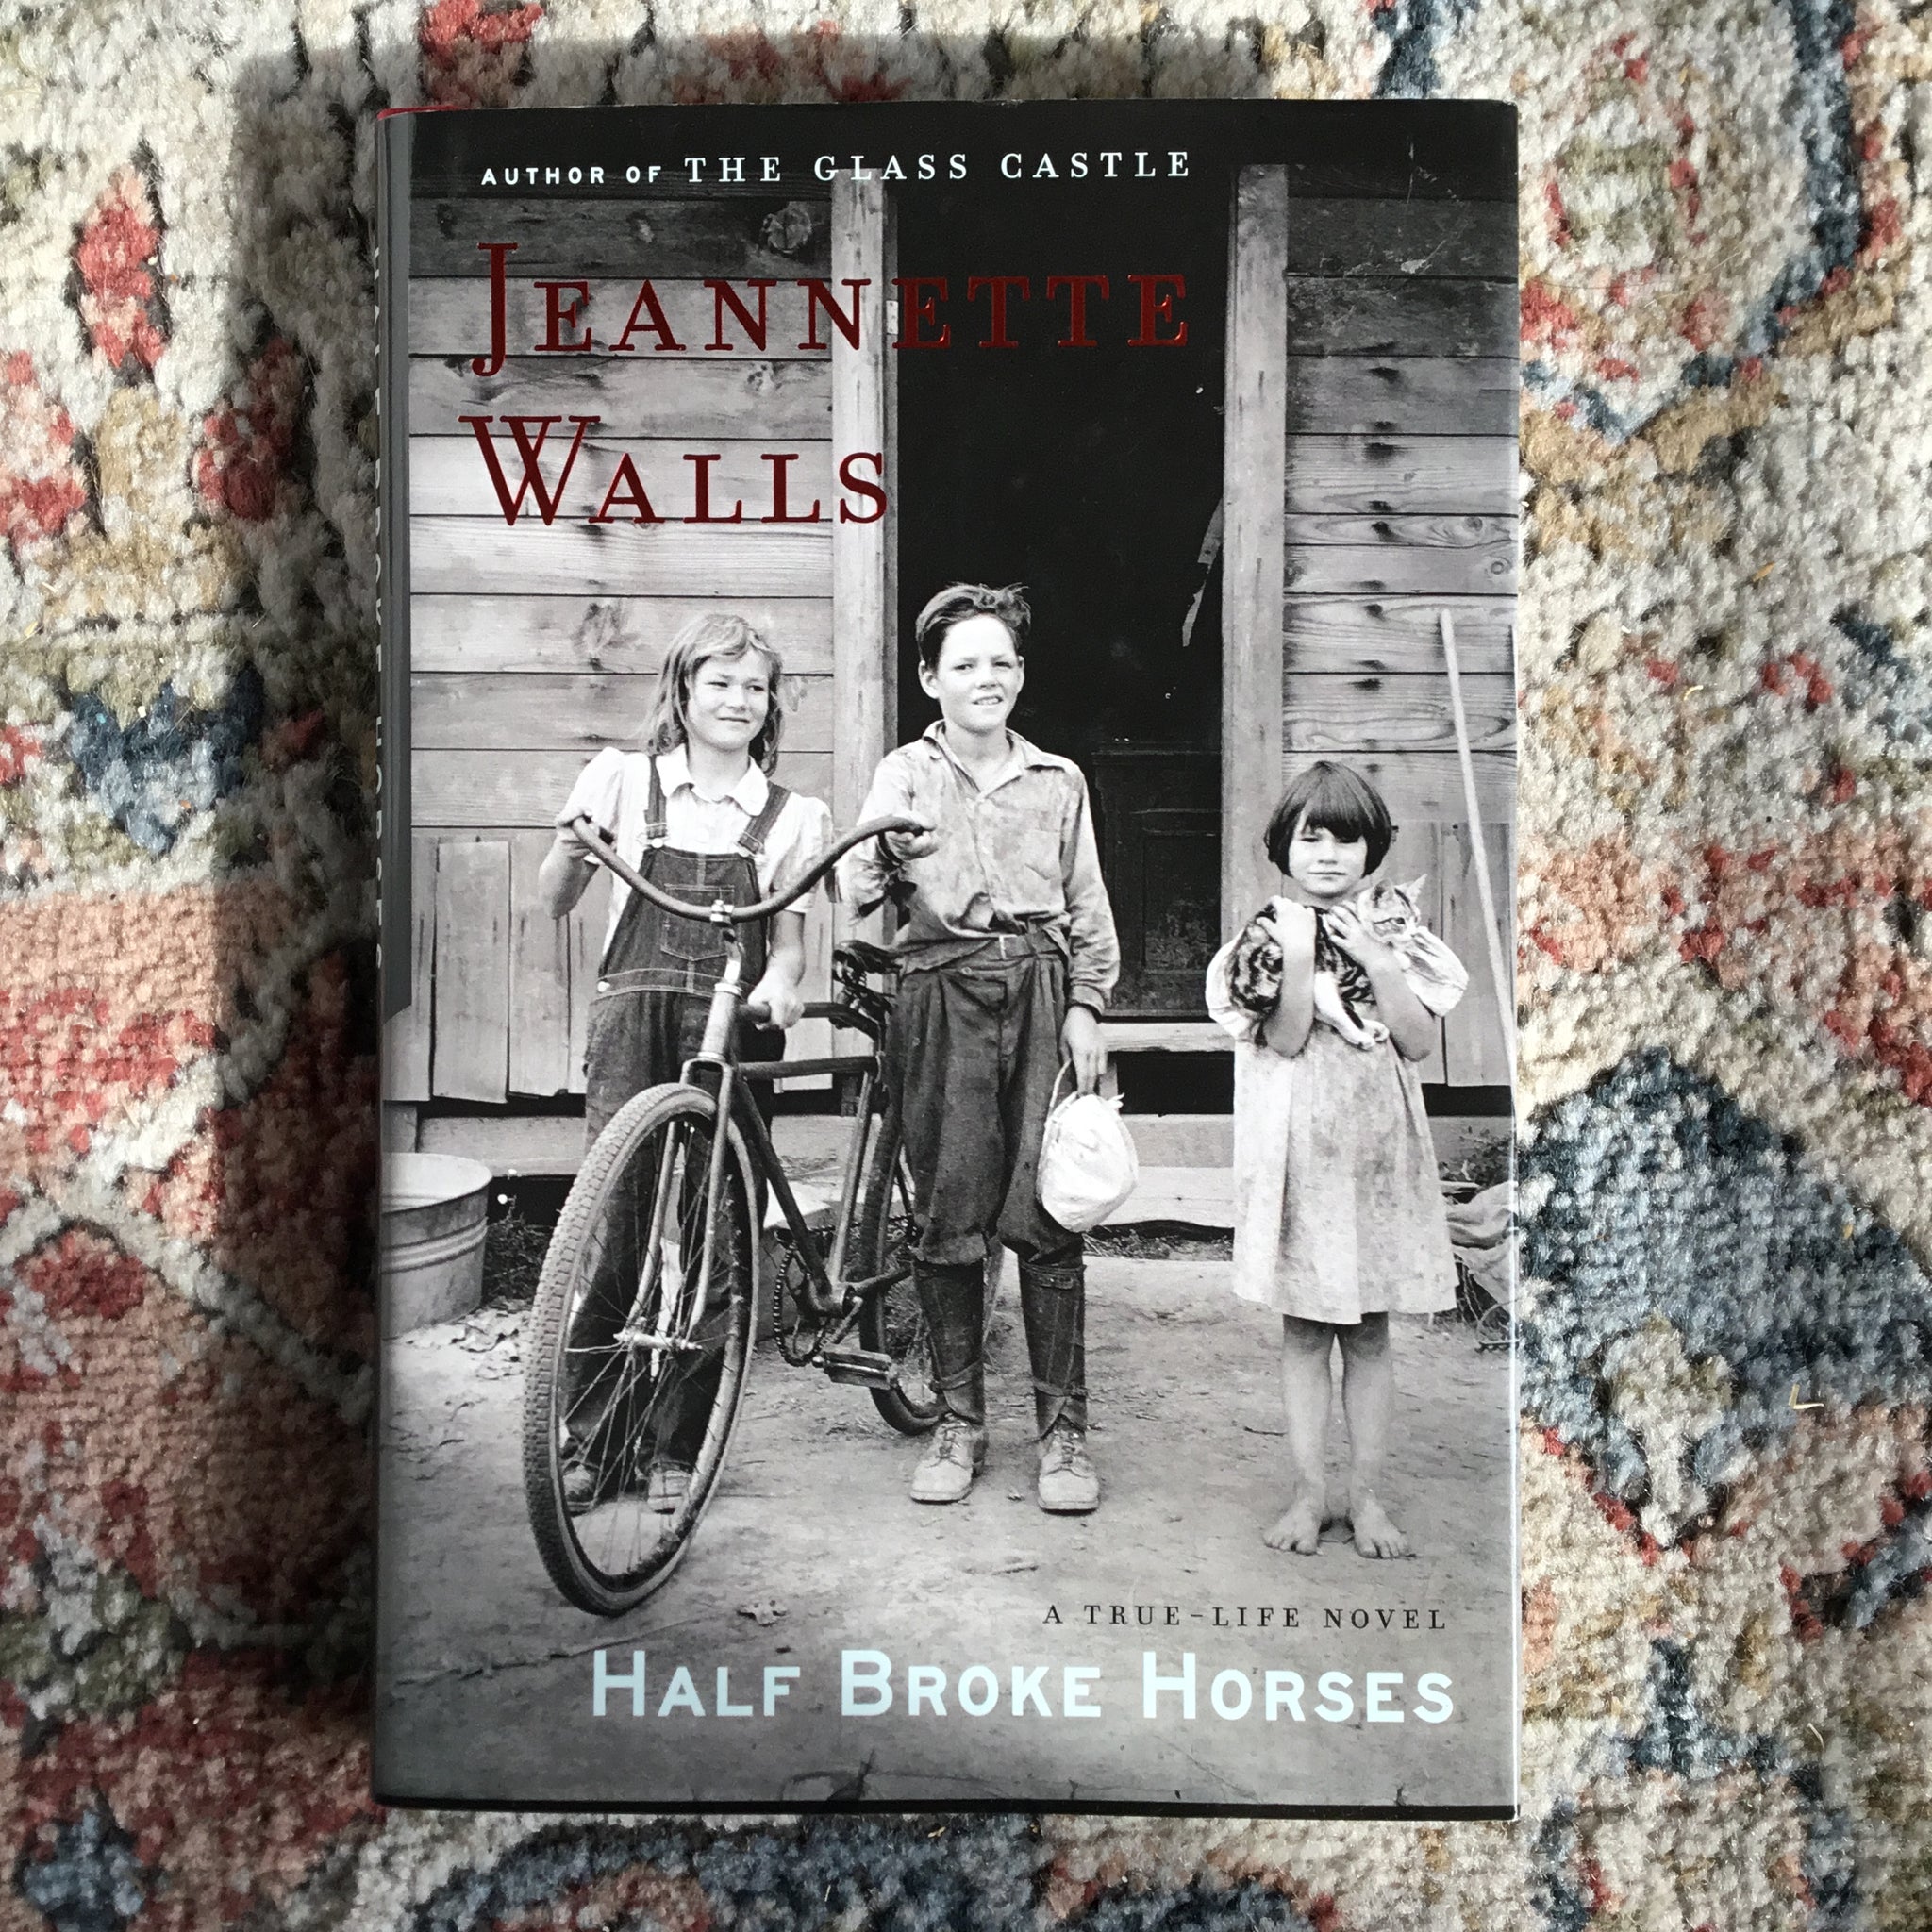 Half Broke Horses: A True-Life Novel